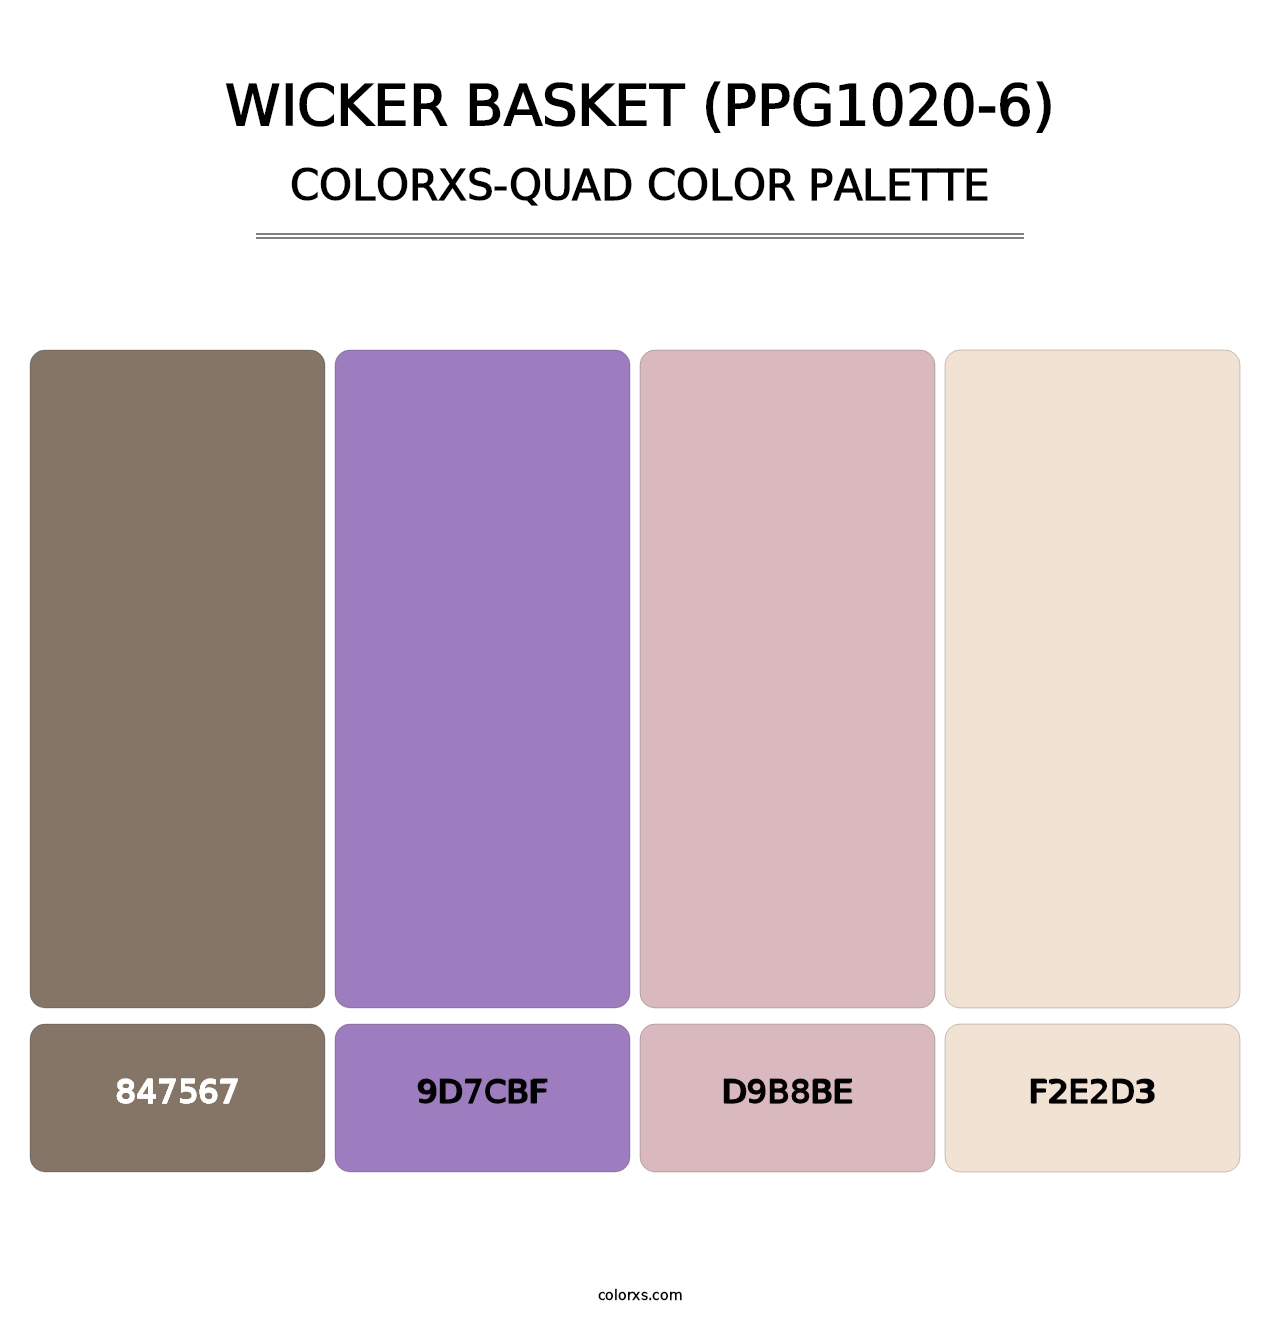 Wicker Basket (PPG1020-6) - Colorxs Quad Palette